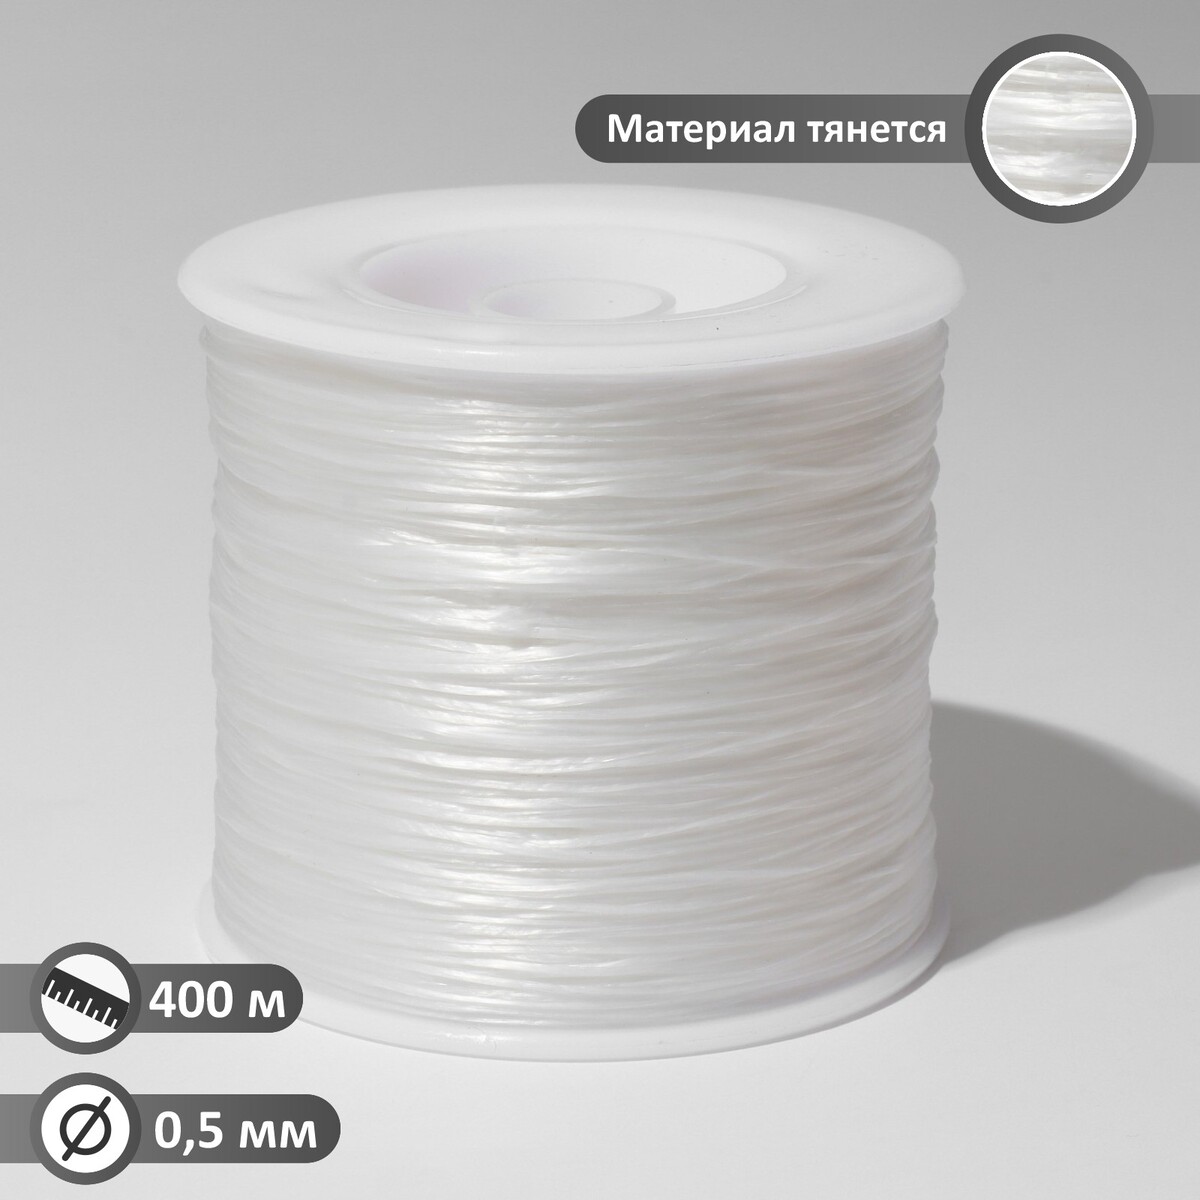 Нить силиконовая (резинка) d=0,5 мм, l=400 м (прочность 2500 денье), цвет белый